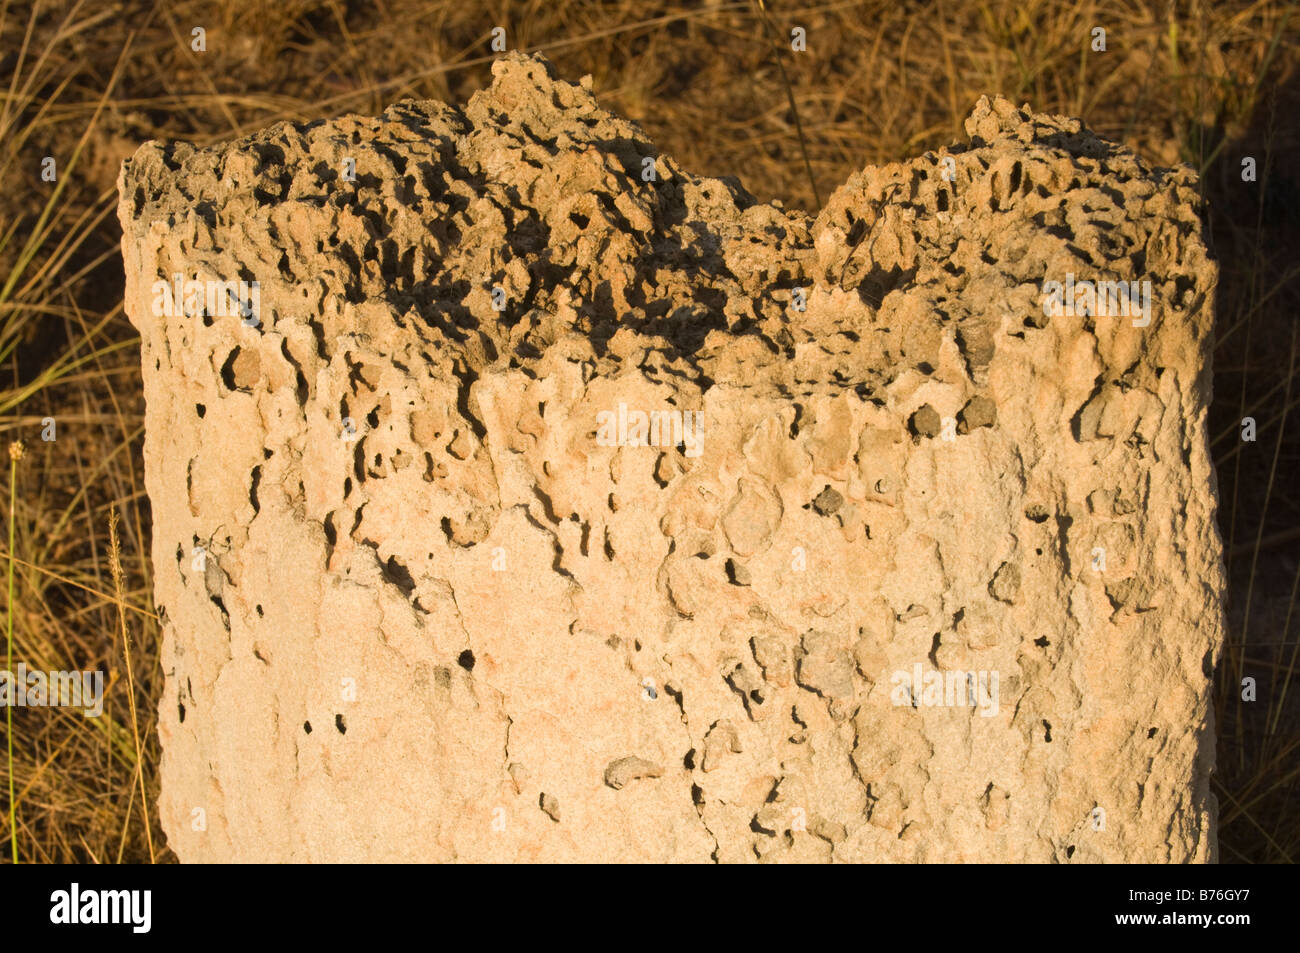 Magnetic Termite (Amitermes Meridionalis & A. Laurensis) Hügel verwüstet nördlich von Lichfield Nationalpark Northern Territory Australien Stockfoto